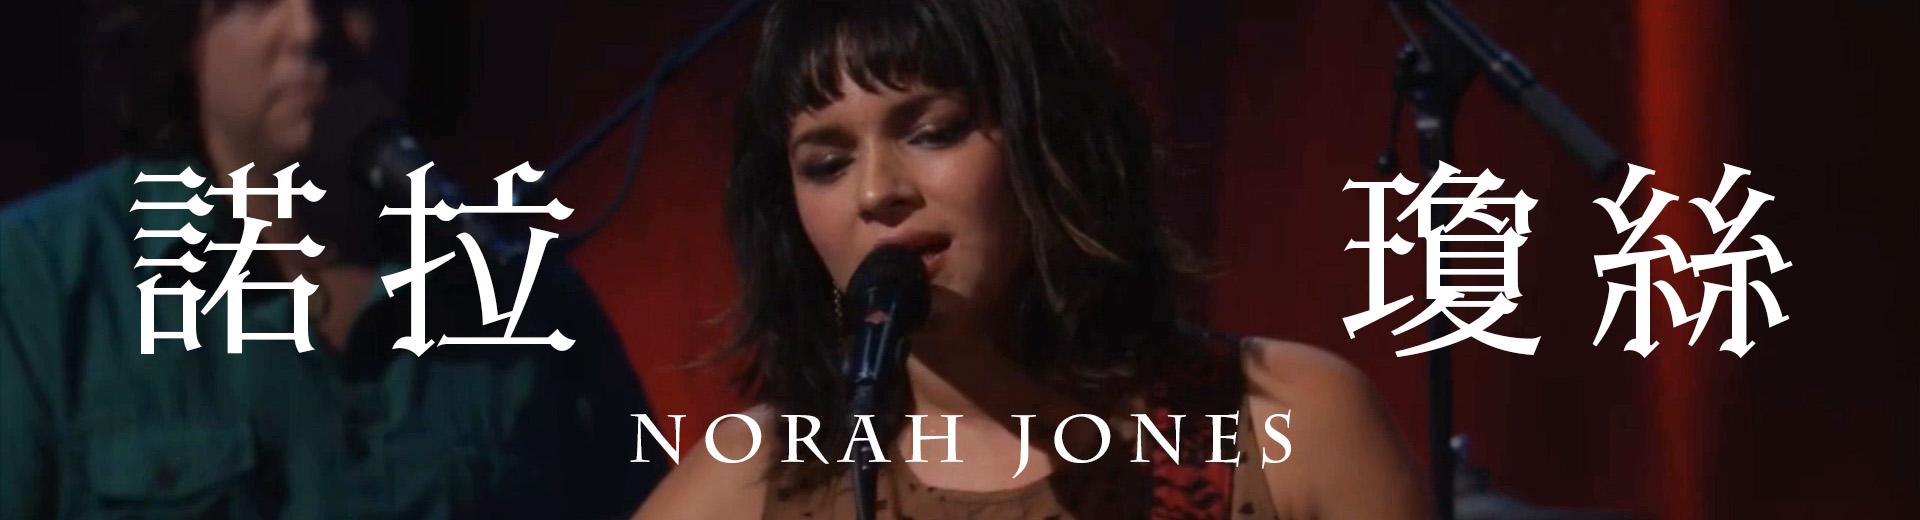 諾拉瓊絲—iTunes音樂節倫敦現場 Norah Jones: iTunes Festival - Live in London